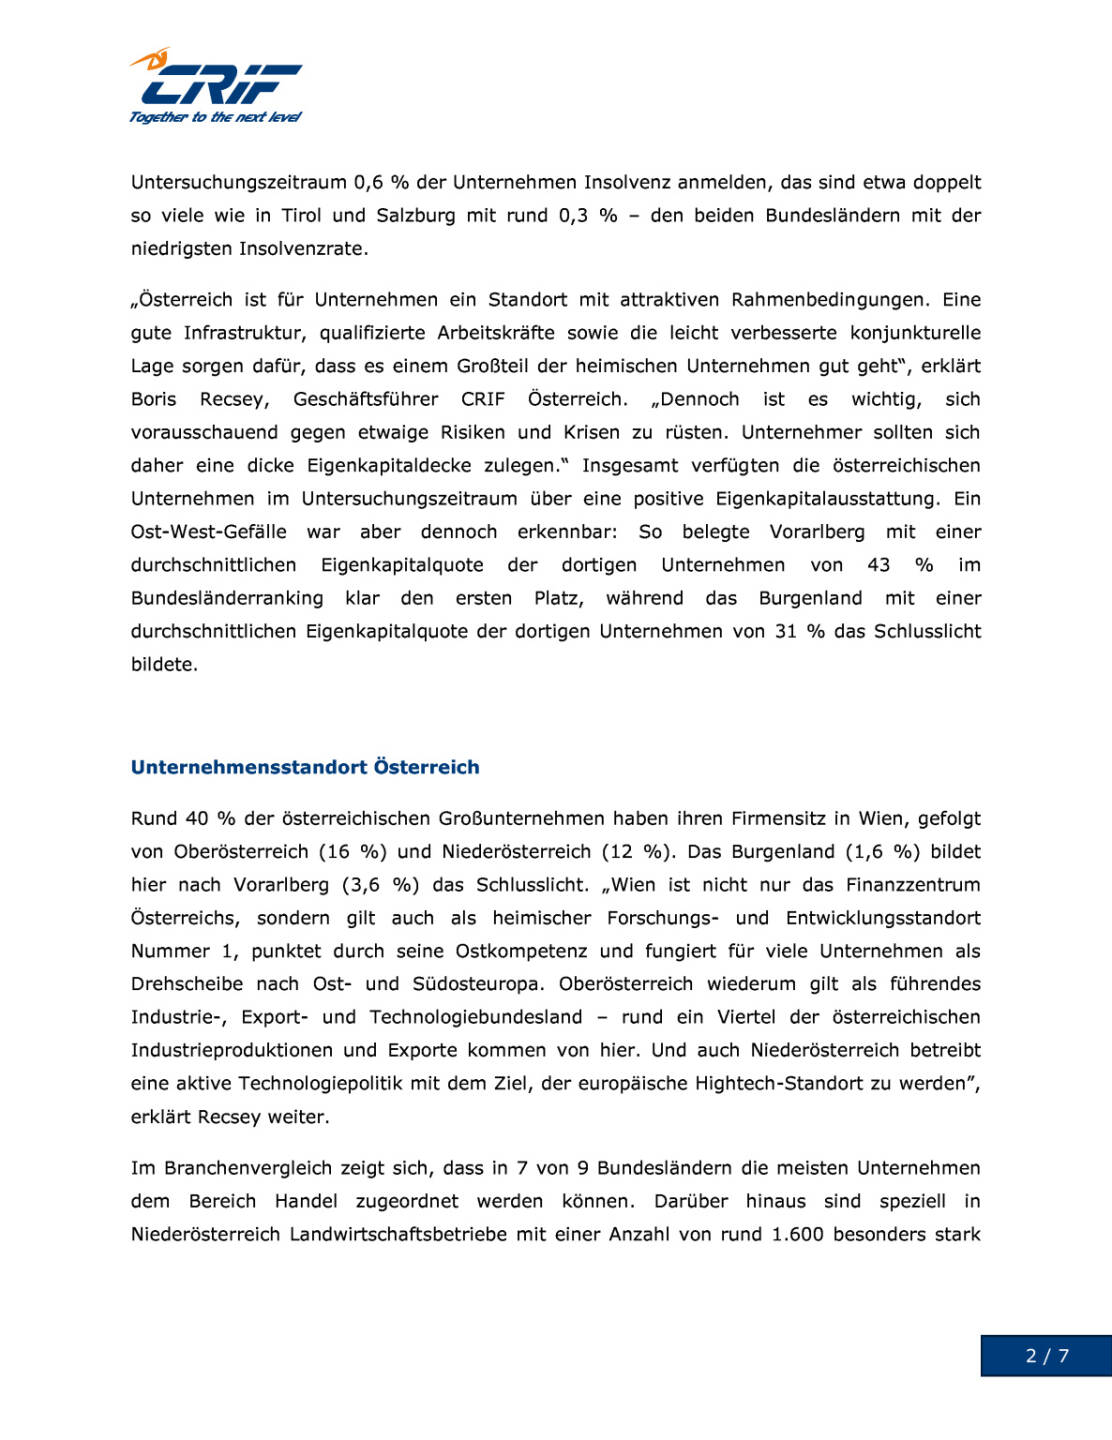 CRIF: Österreichische Unternehmen im Focus, Seite 2/7, komplettes Dokument unter http://boerse-social.com/static/uploads/file_1578_crif_osterreichische_unternehmen_im_focus.pdf